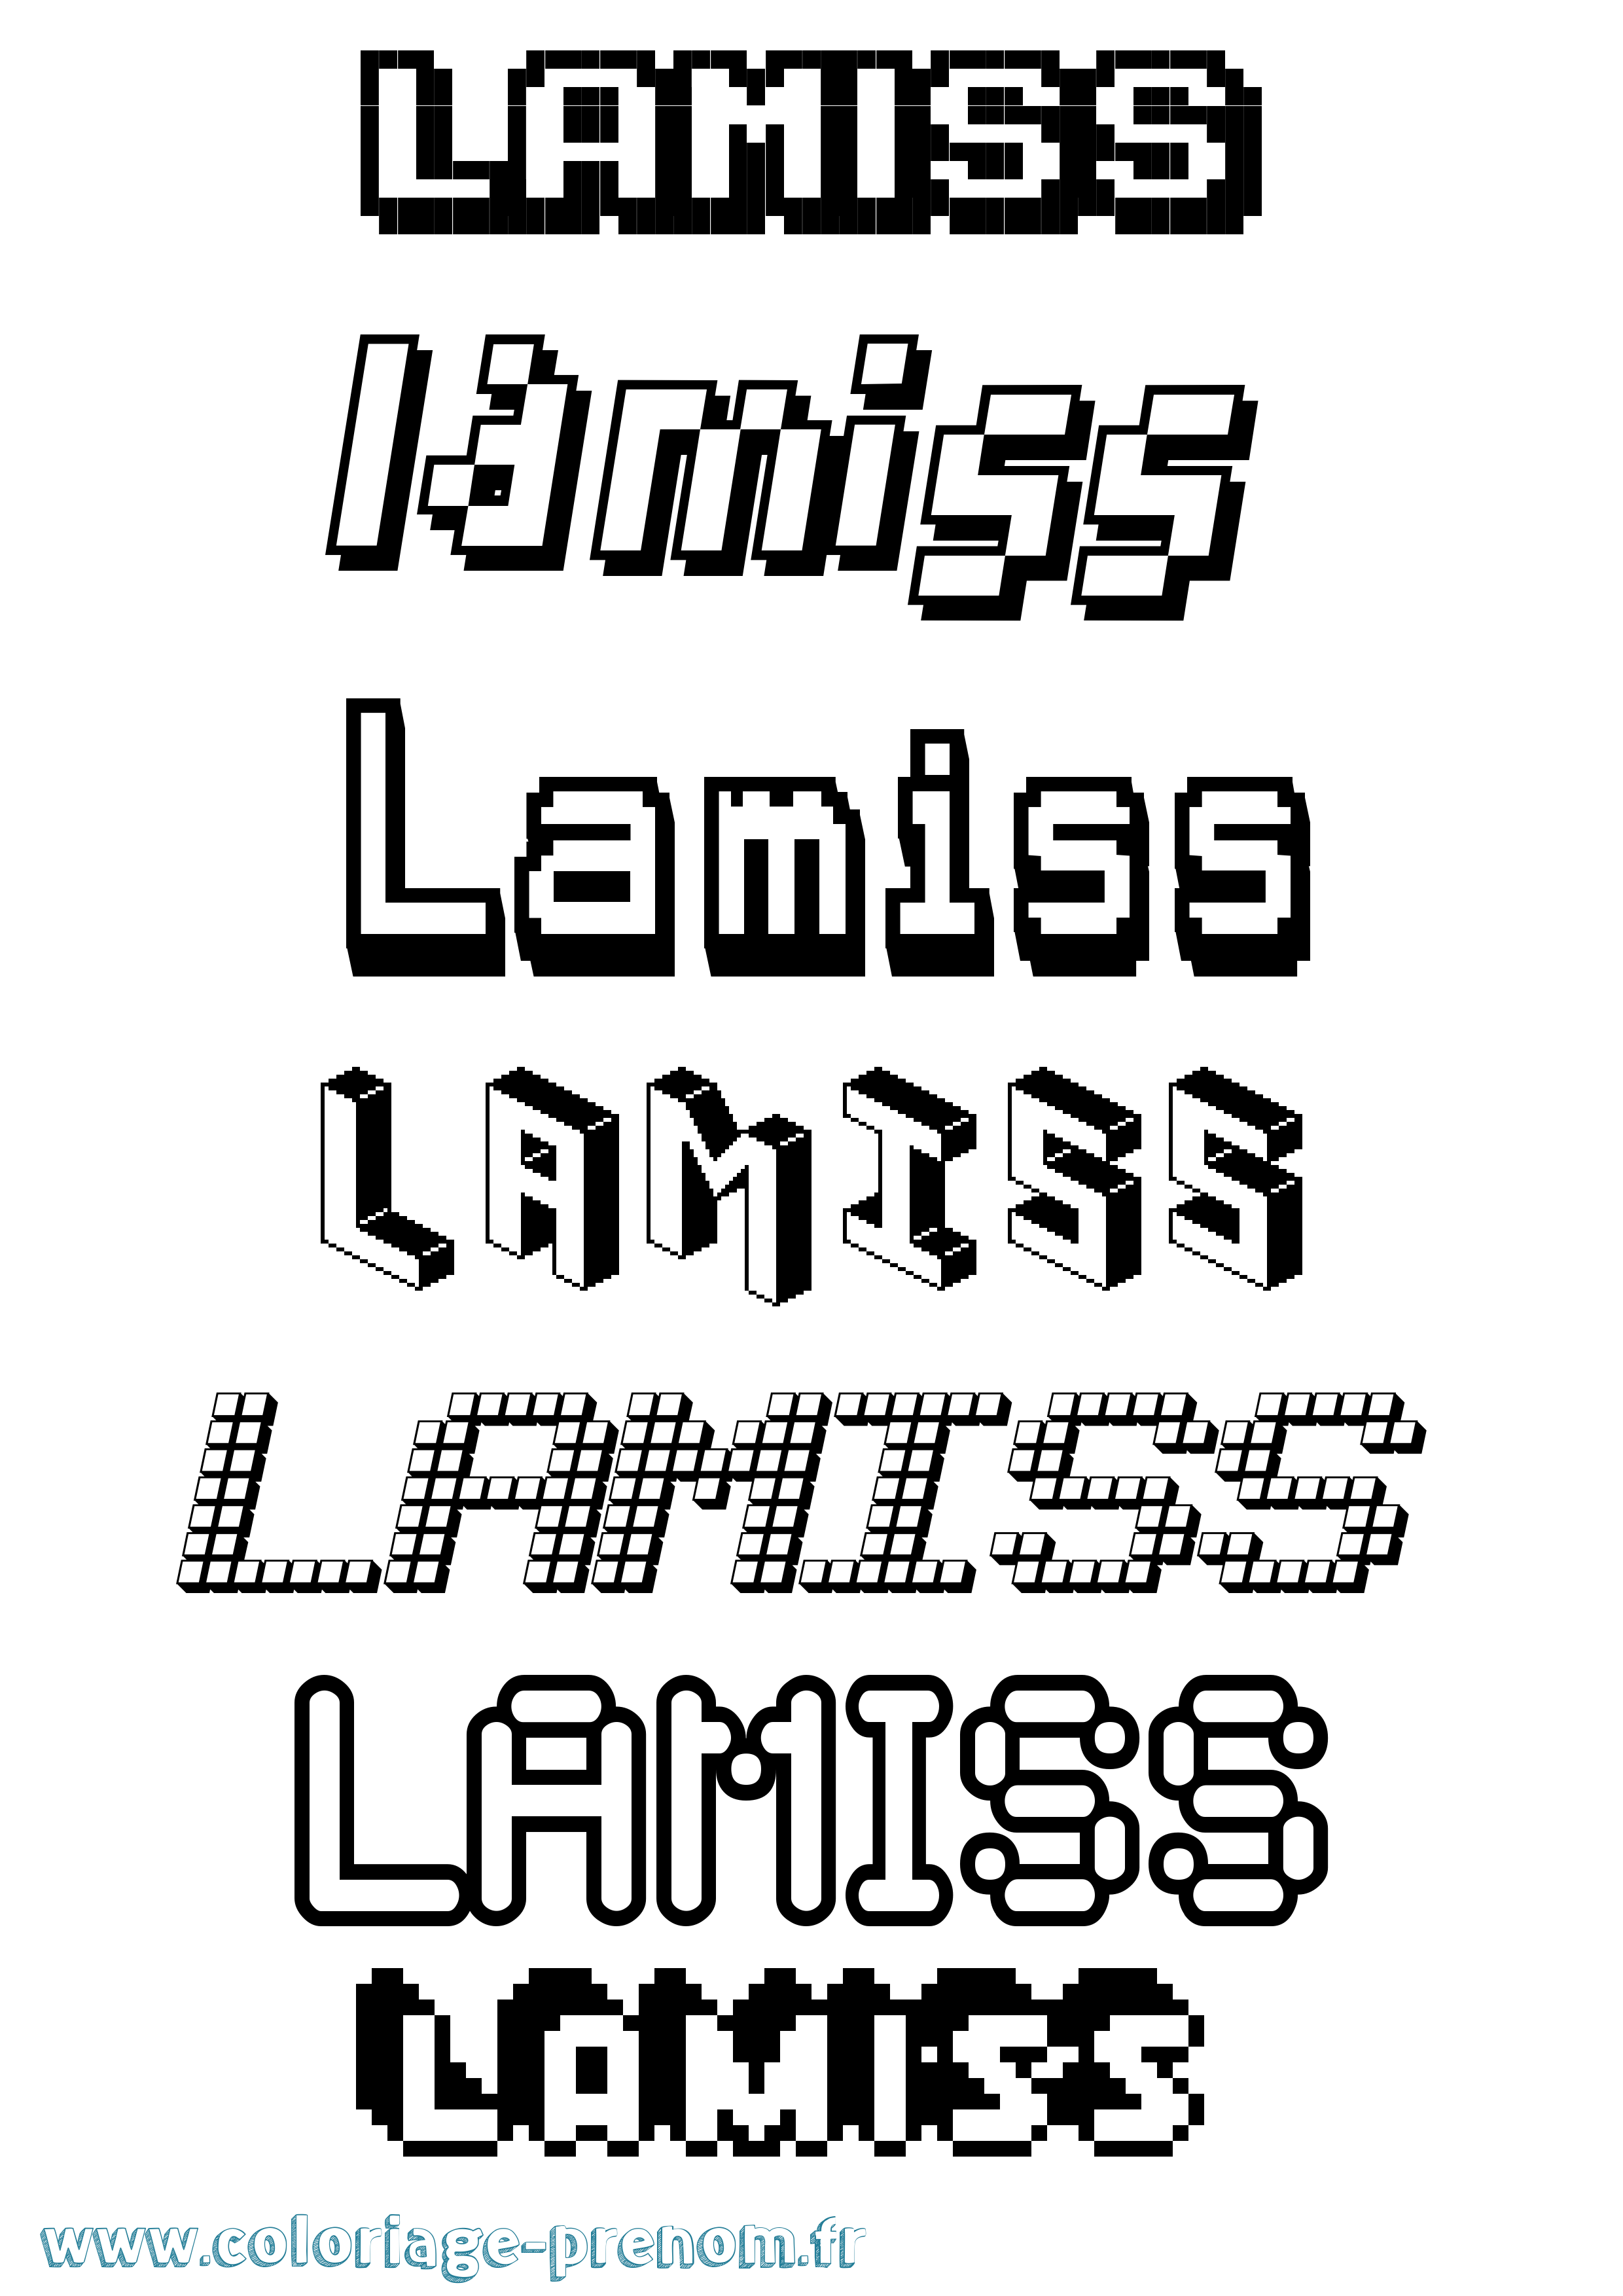 Coloriage prénom Lamiss Pixel